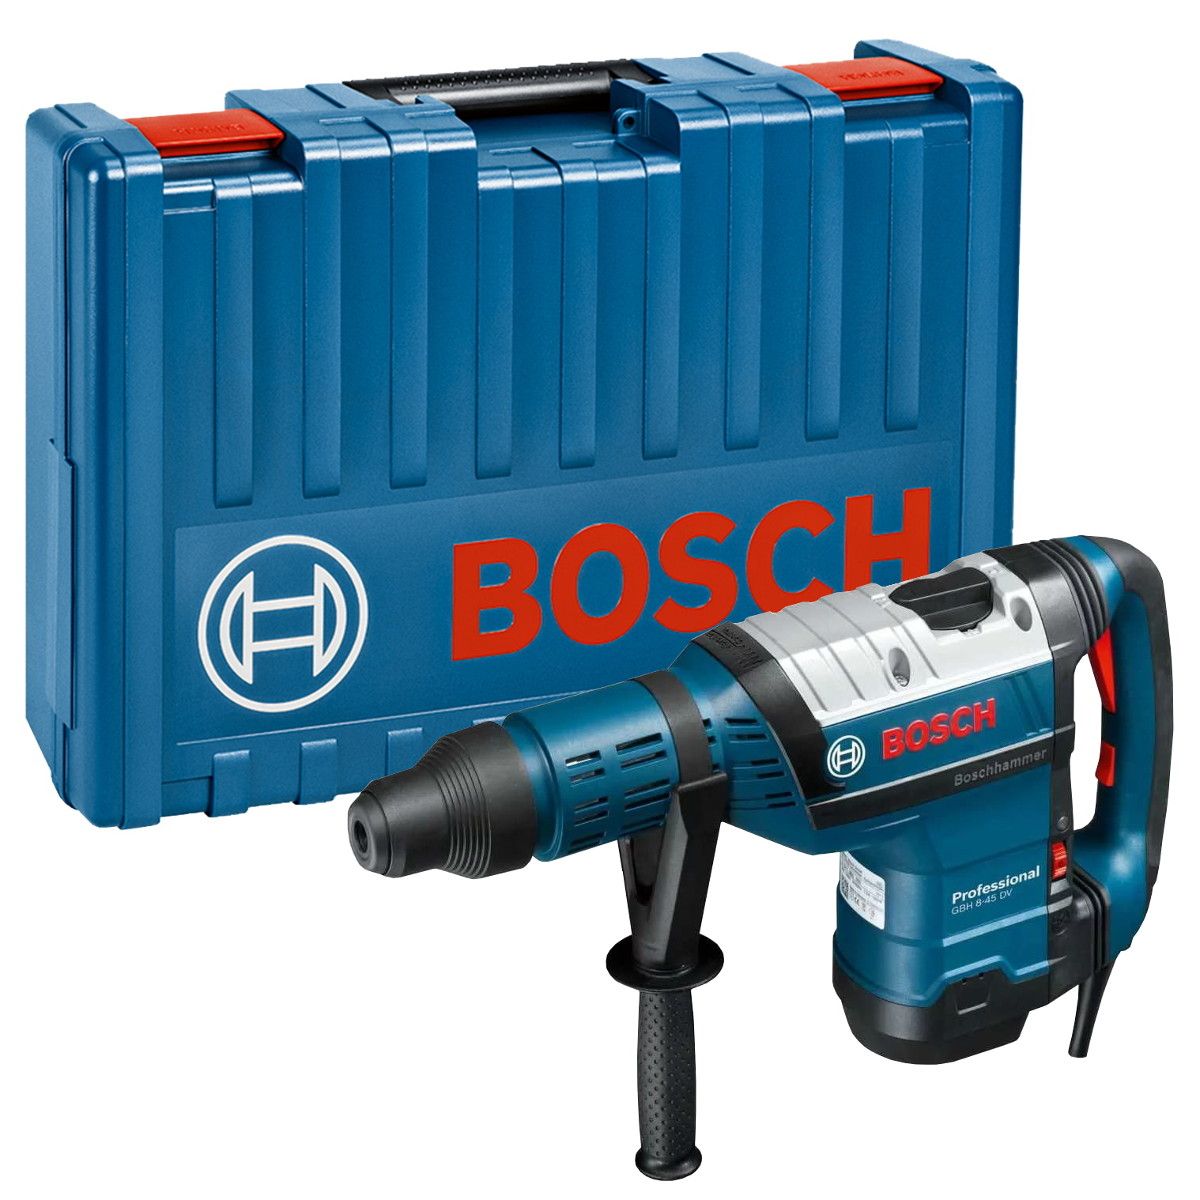 Bosch GBH 8-45 DV SDS max boorhamer 12,5J in koffer